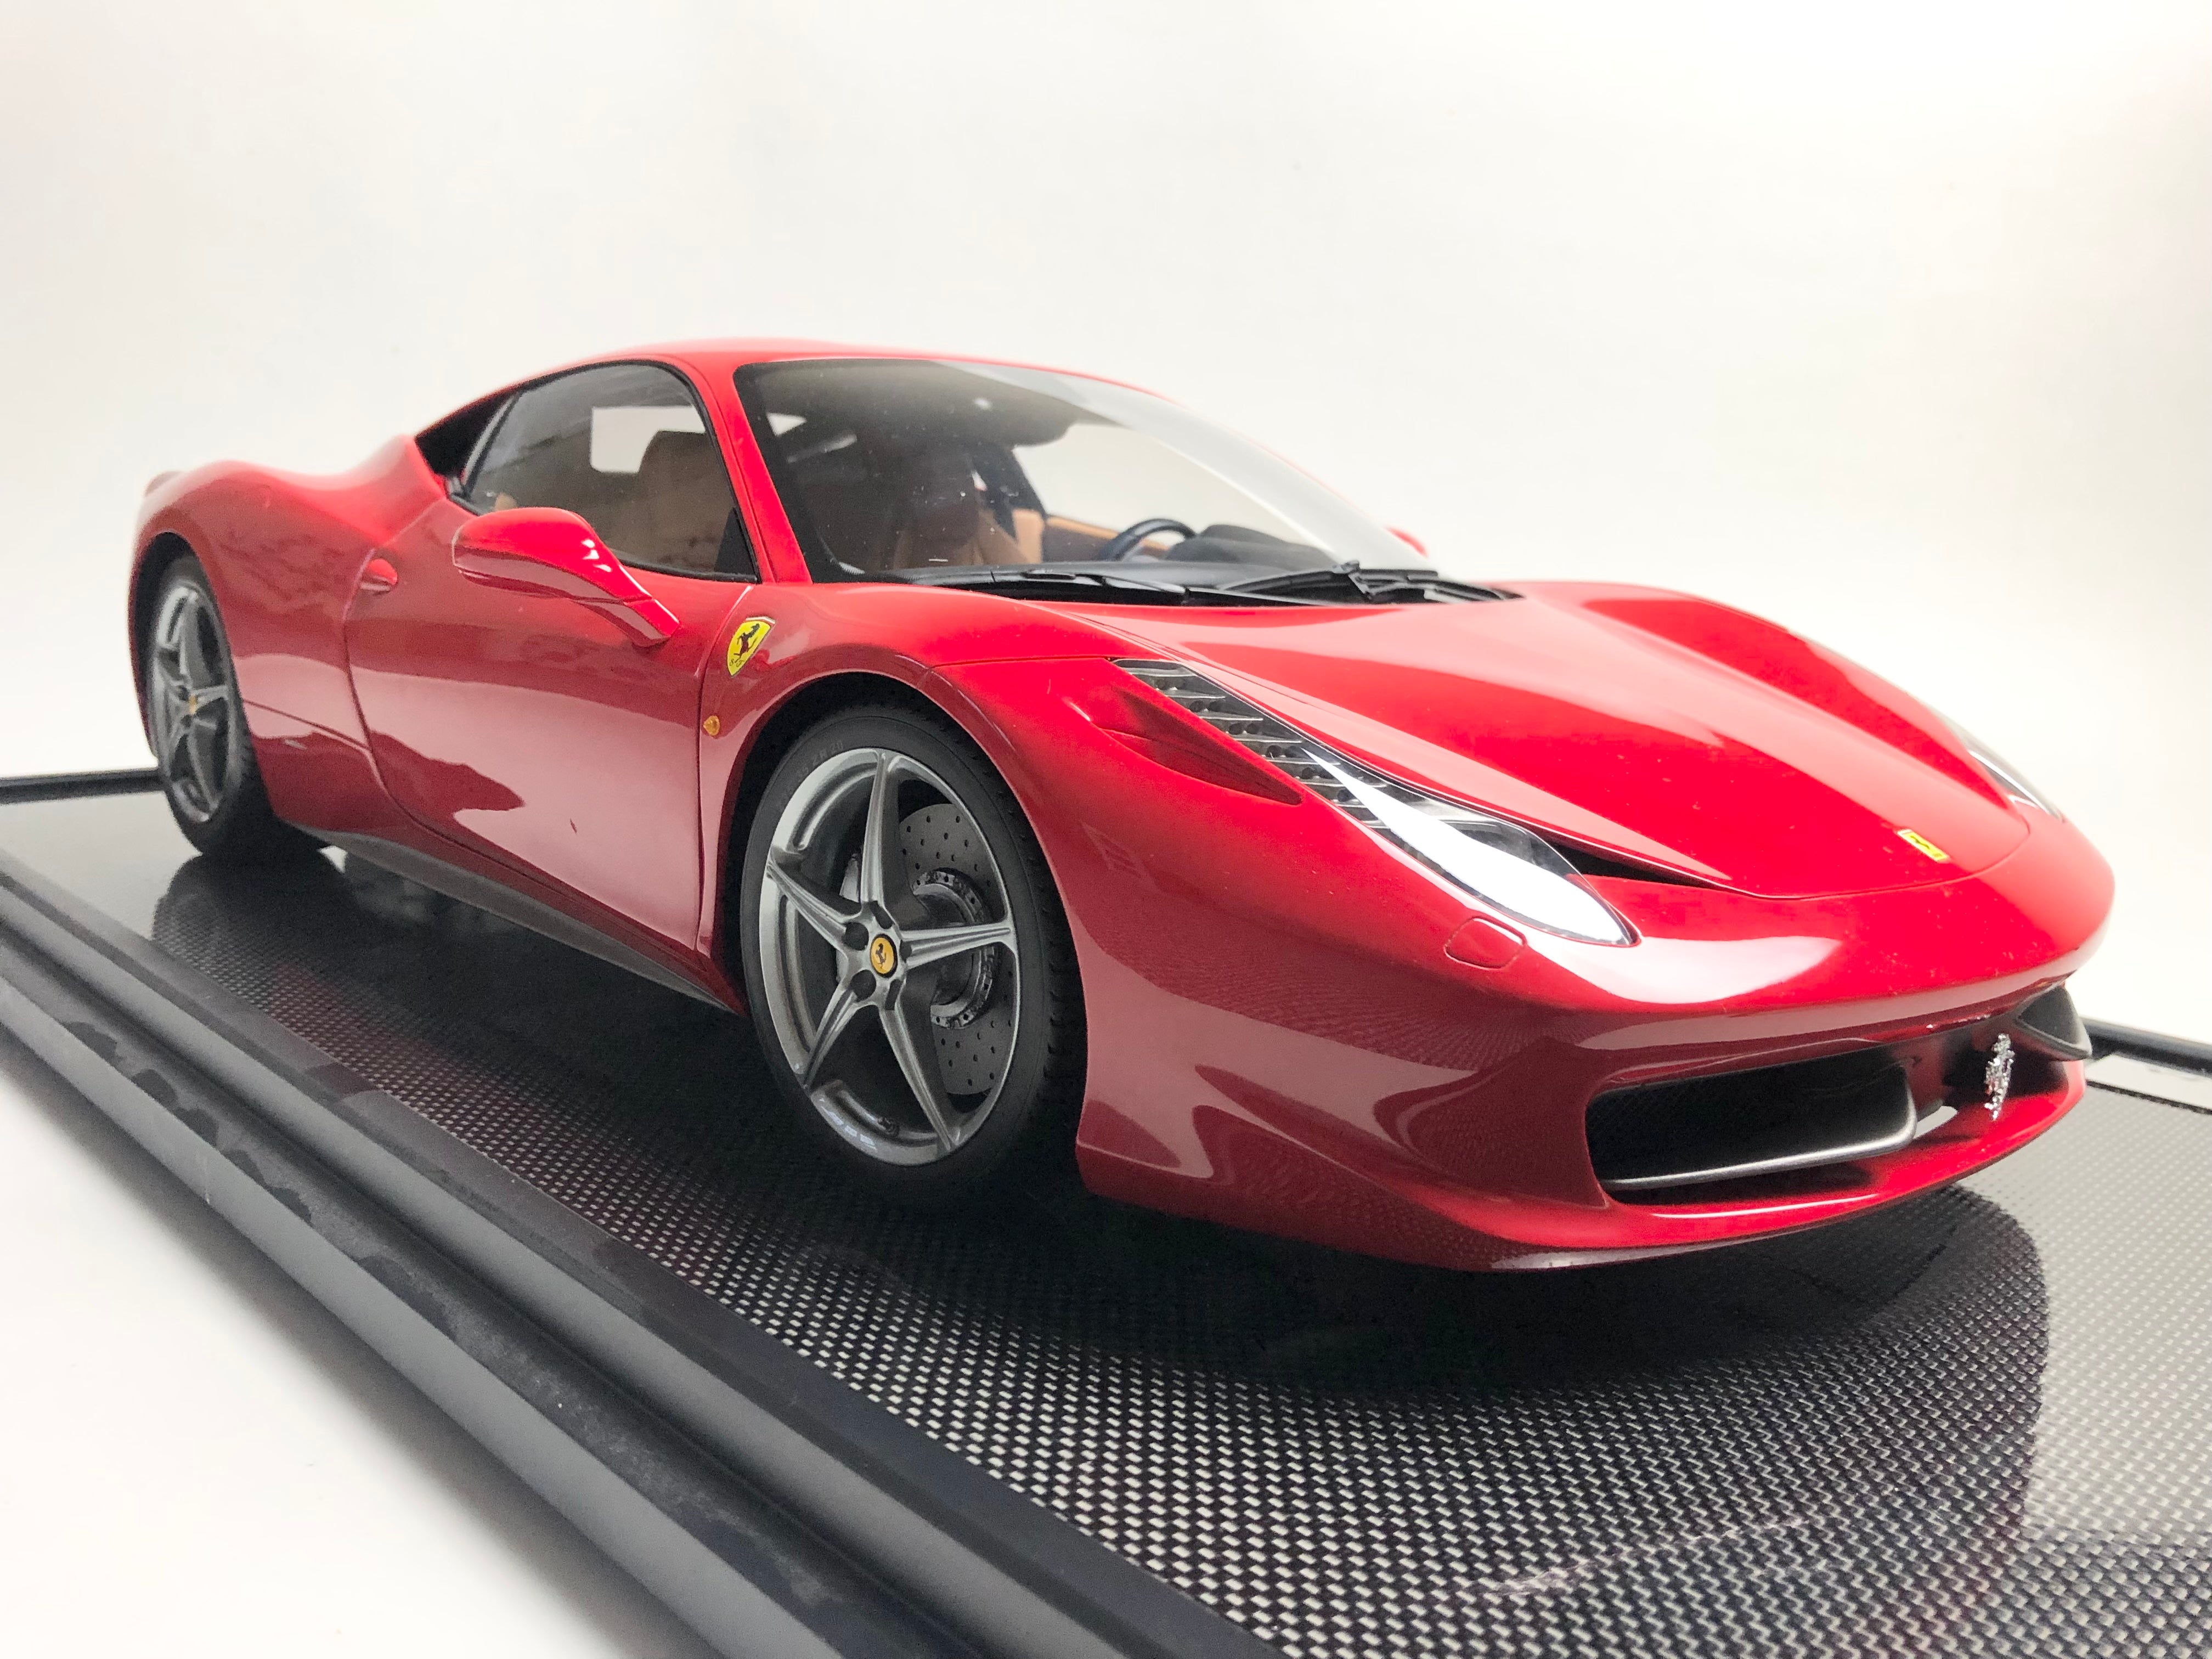 Amalgam 1:8 scale Ferrari 458 Italia